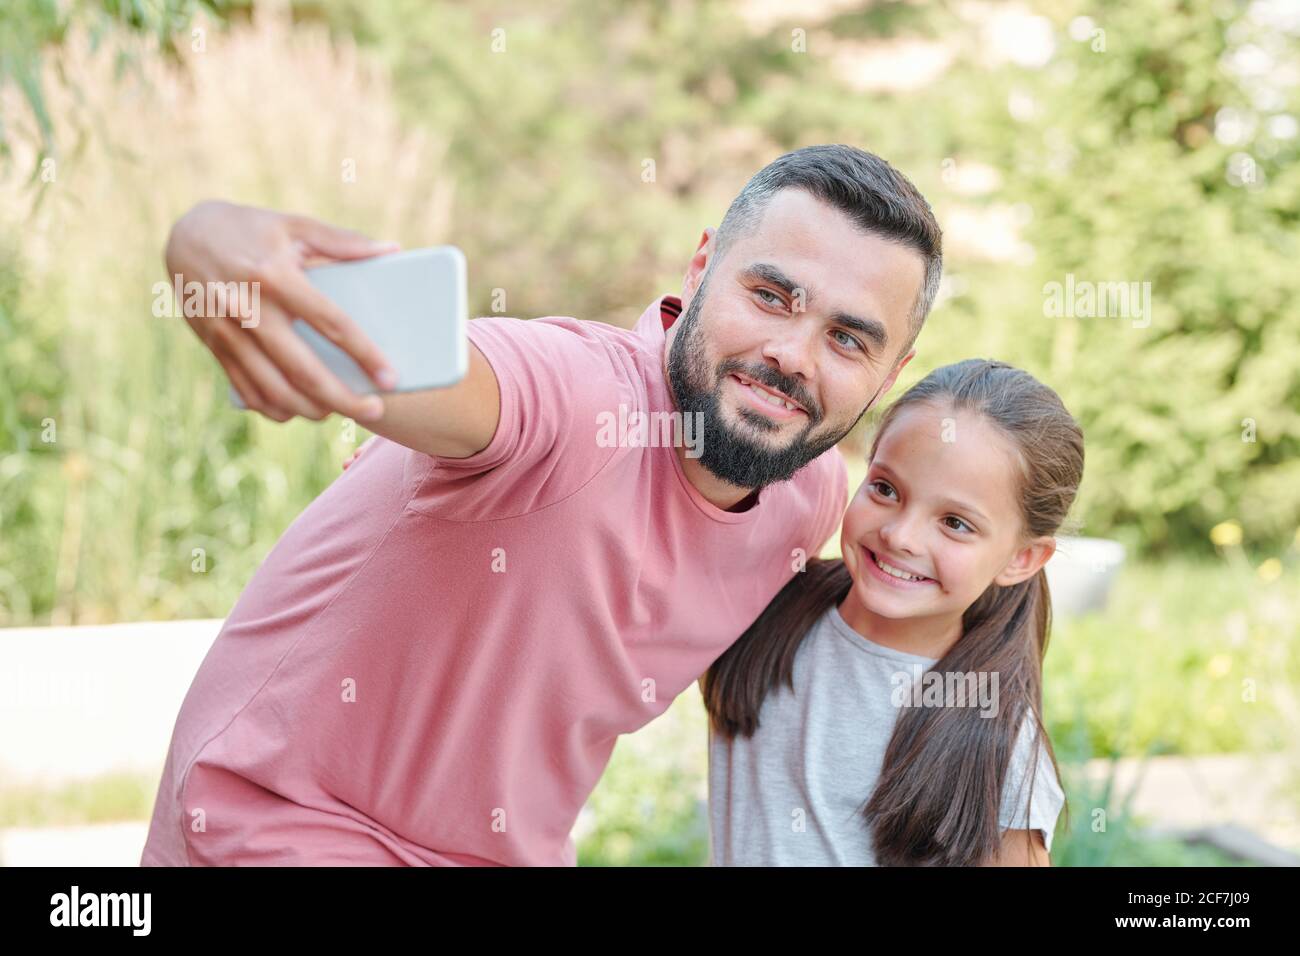 Jeune père adulte moderne portant un T-shirt rose pâle prenant un selfie tourné avec sa fille, horizontal moyen Banque D'Images